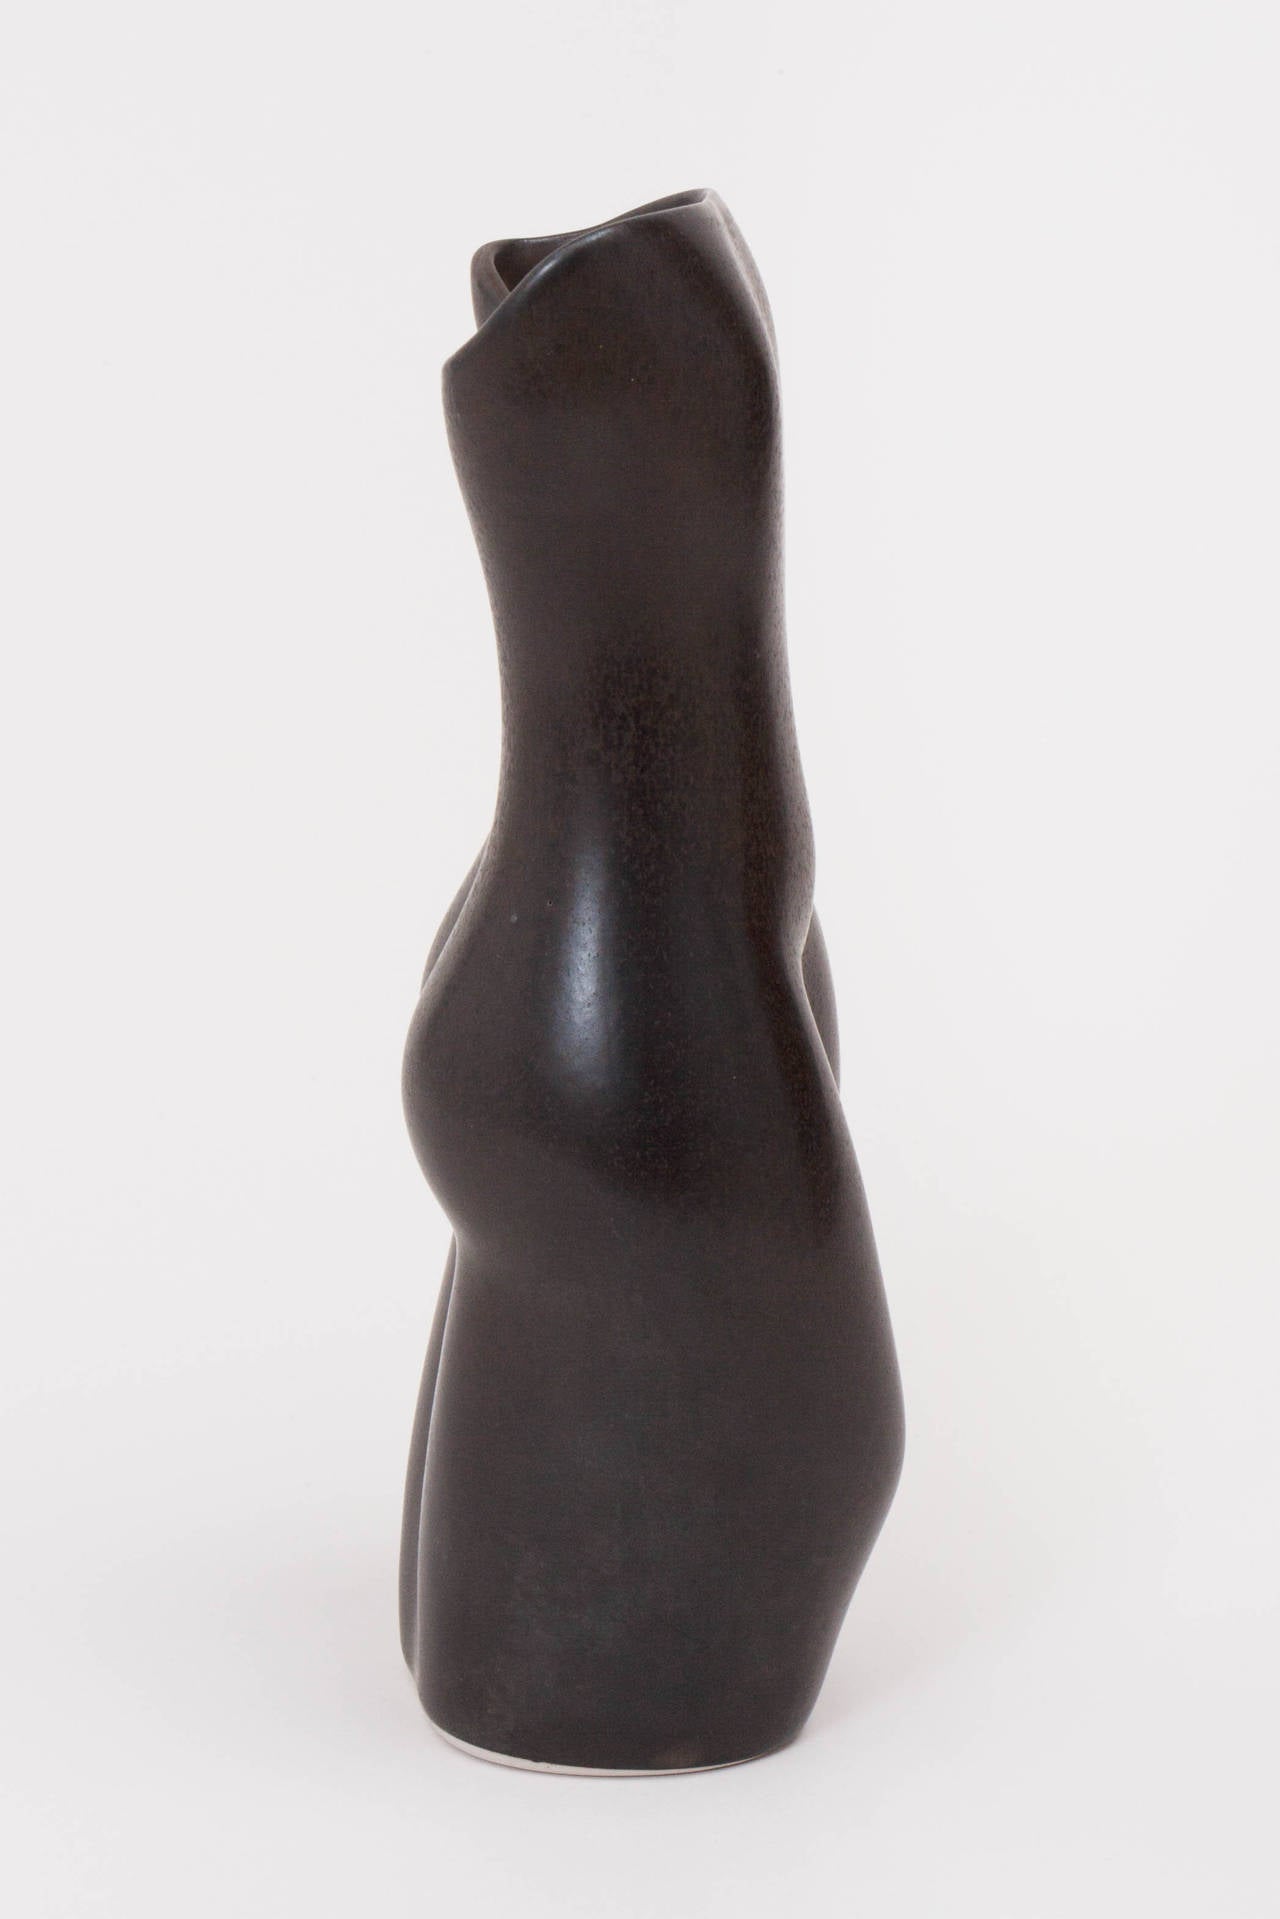 American Nude Ceramic Vase